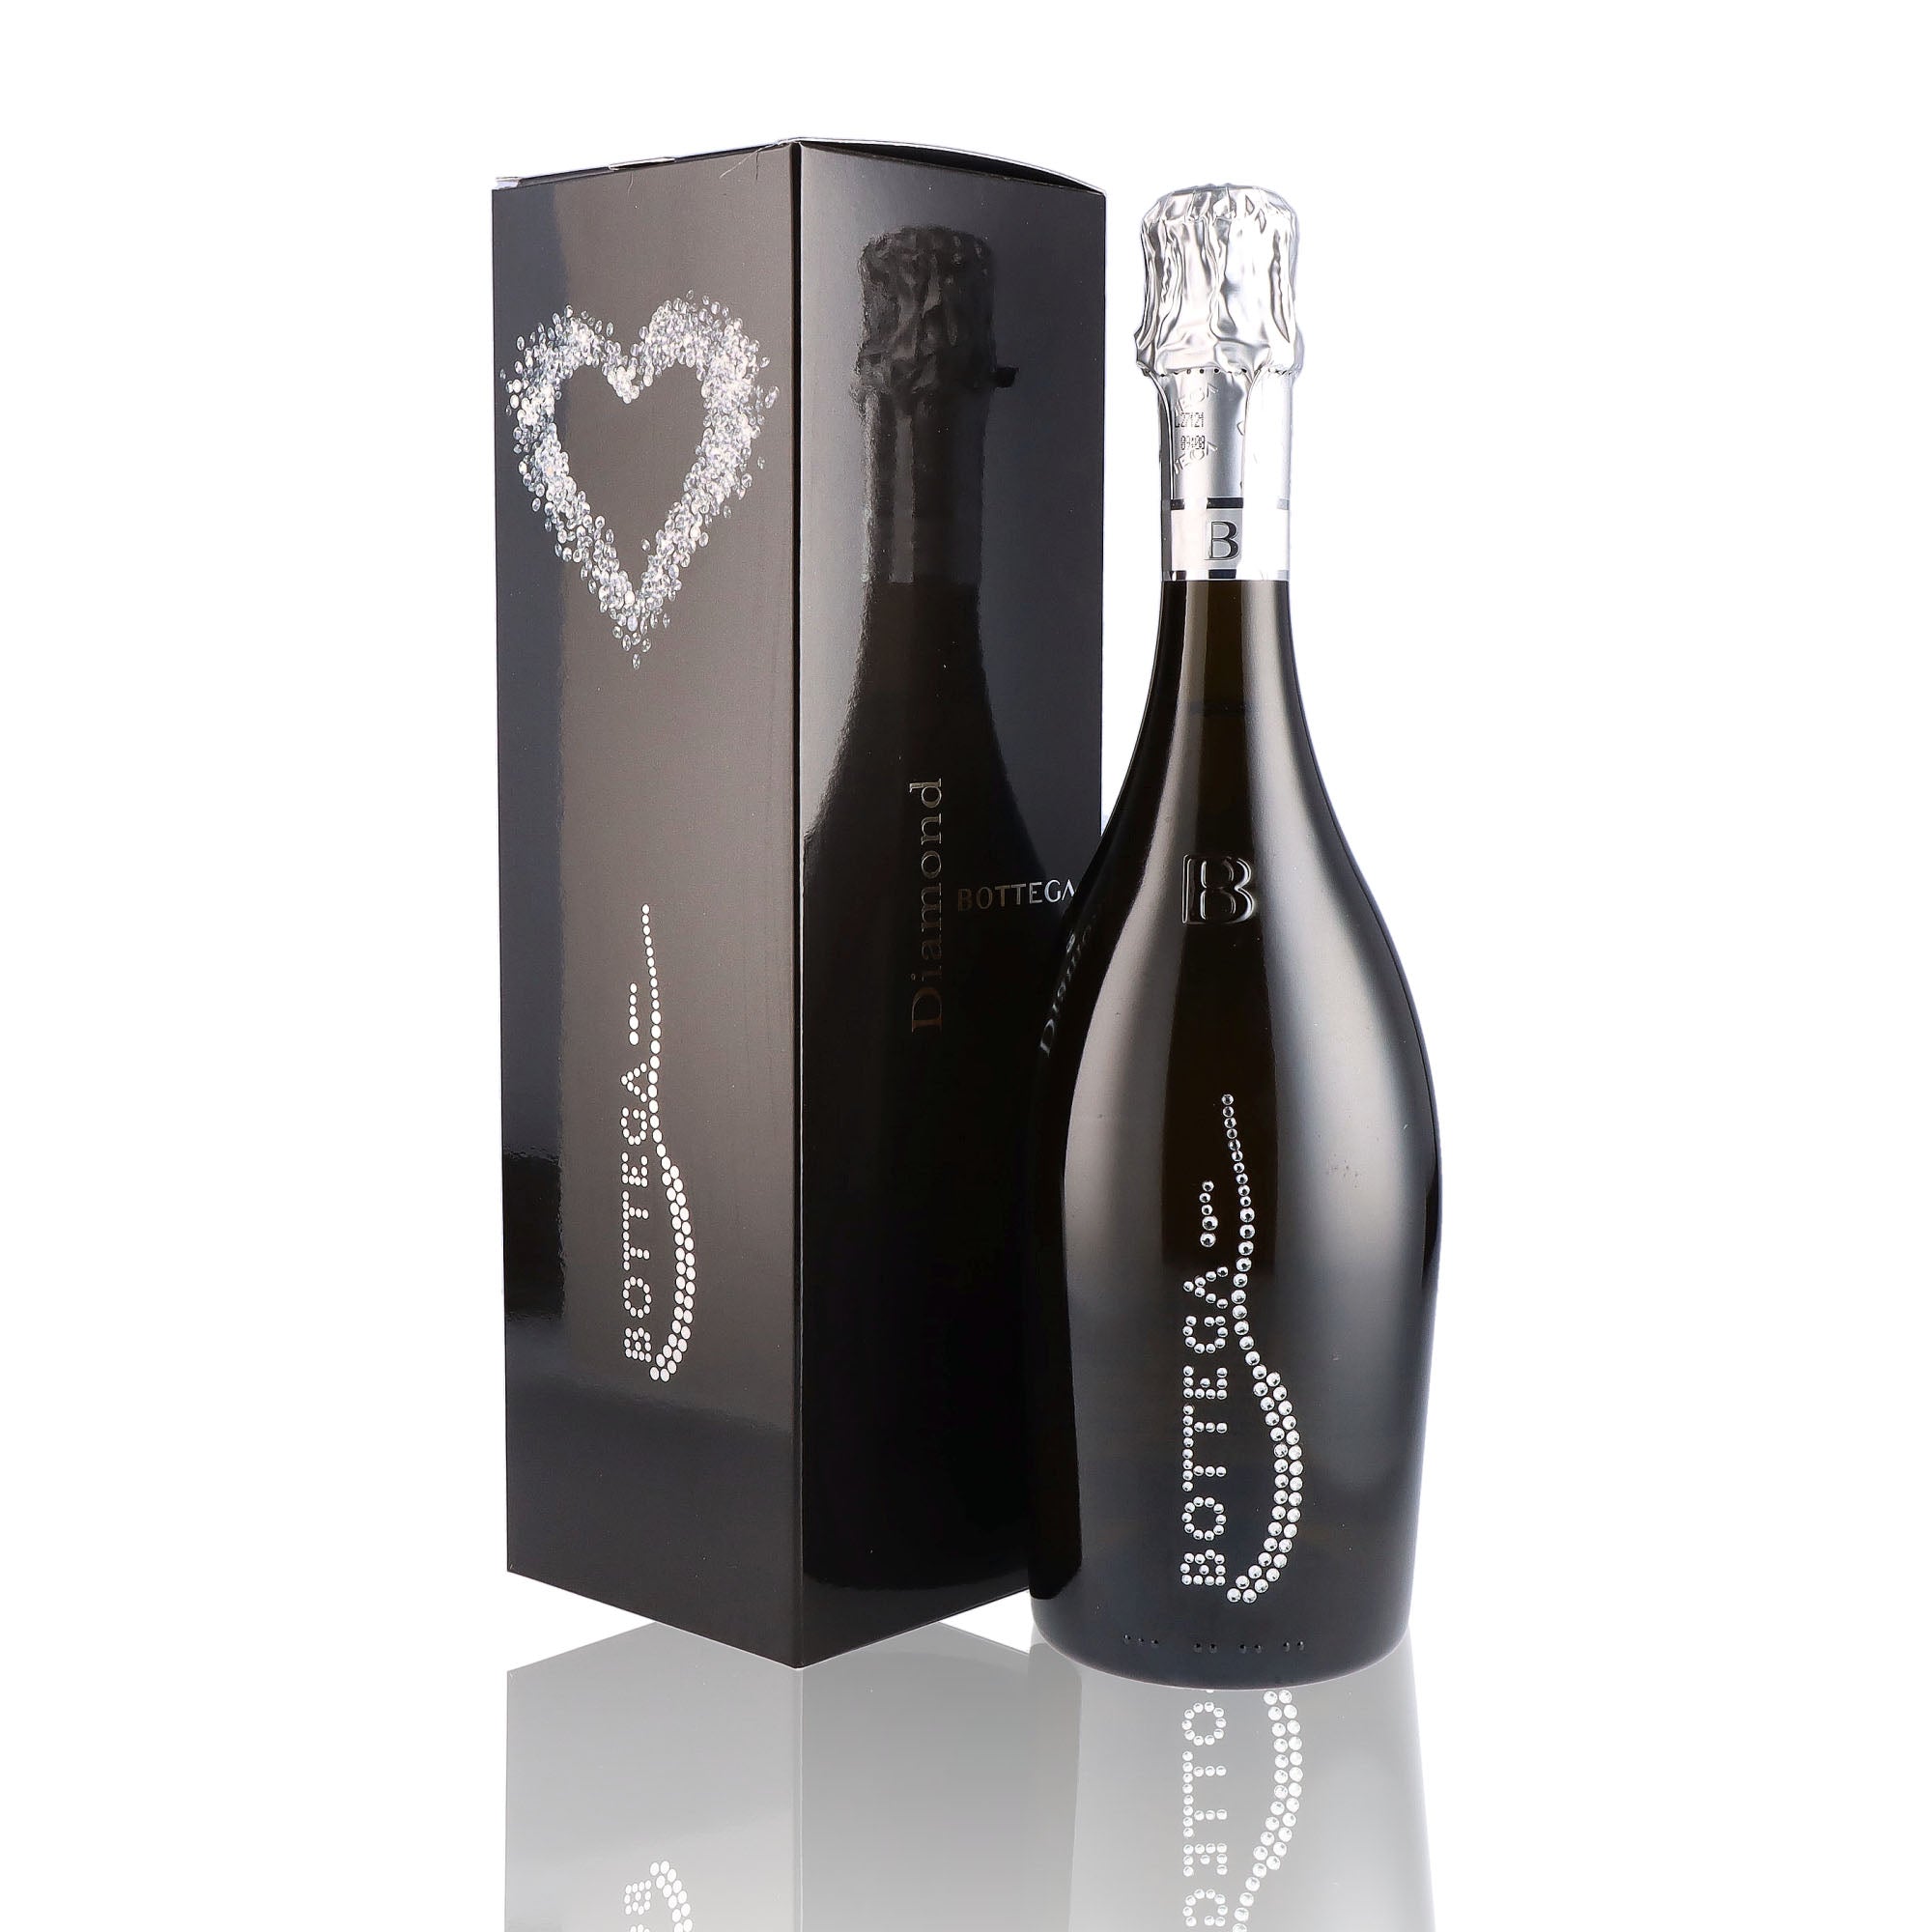 Une bouteille de prosecco de la marque Bottega, de type brut, nommée Diamond Pinot Noir.